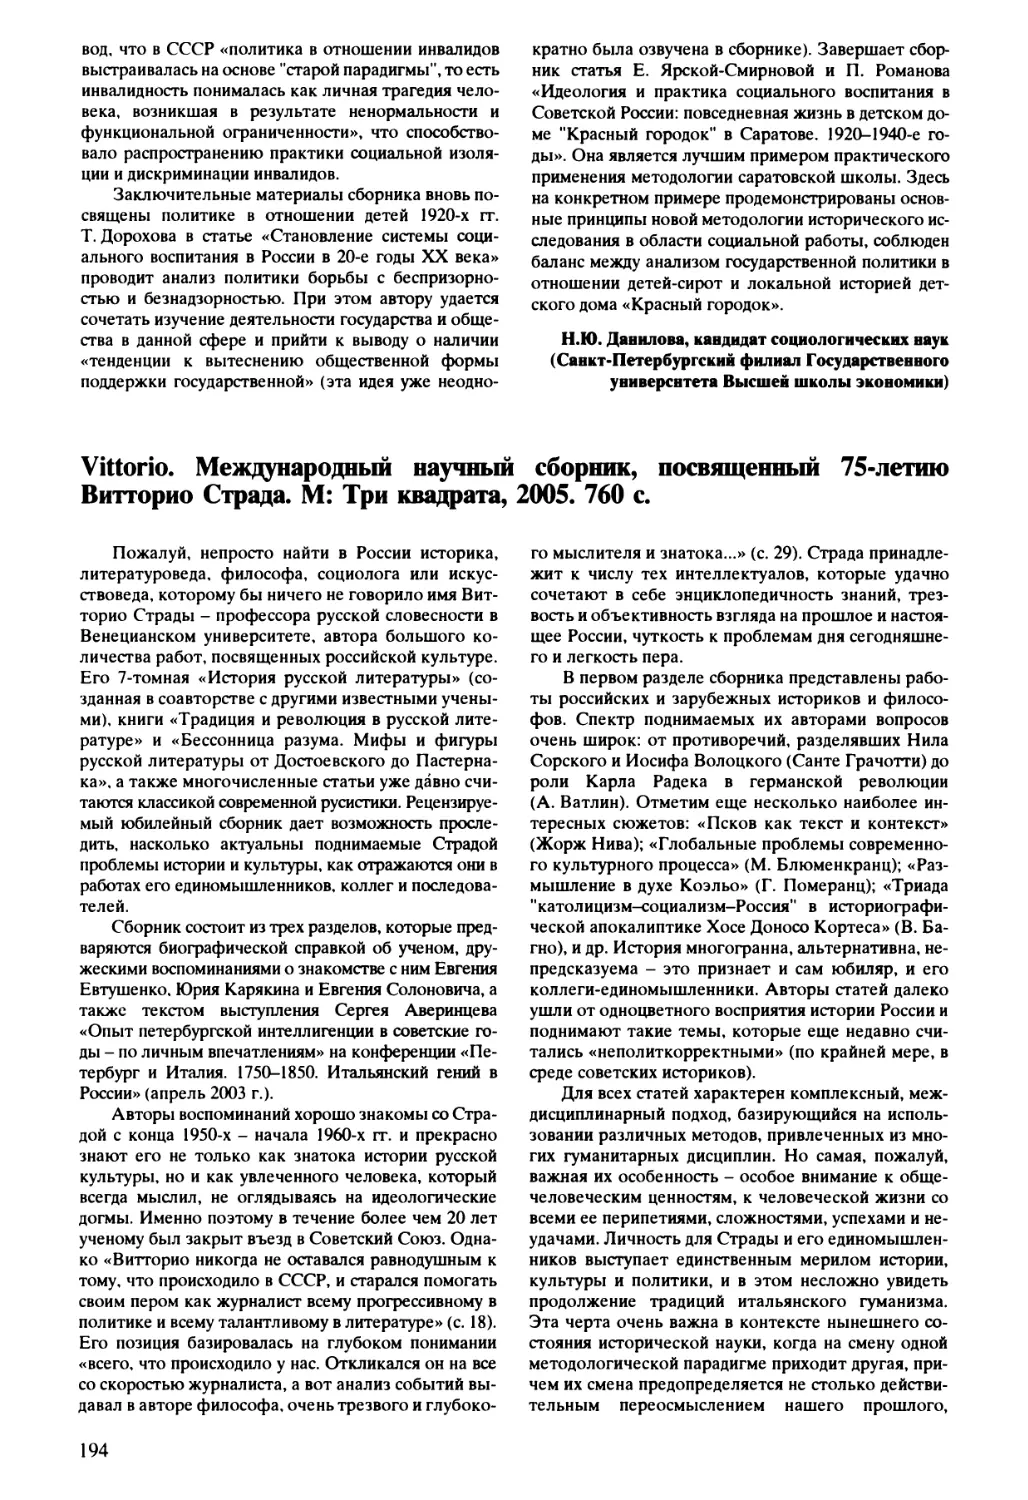 Телицын  В.Л.  -  Vittorio.  Международный  научный  сборник,  посвященный  75-летию  Витторио Страда